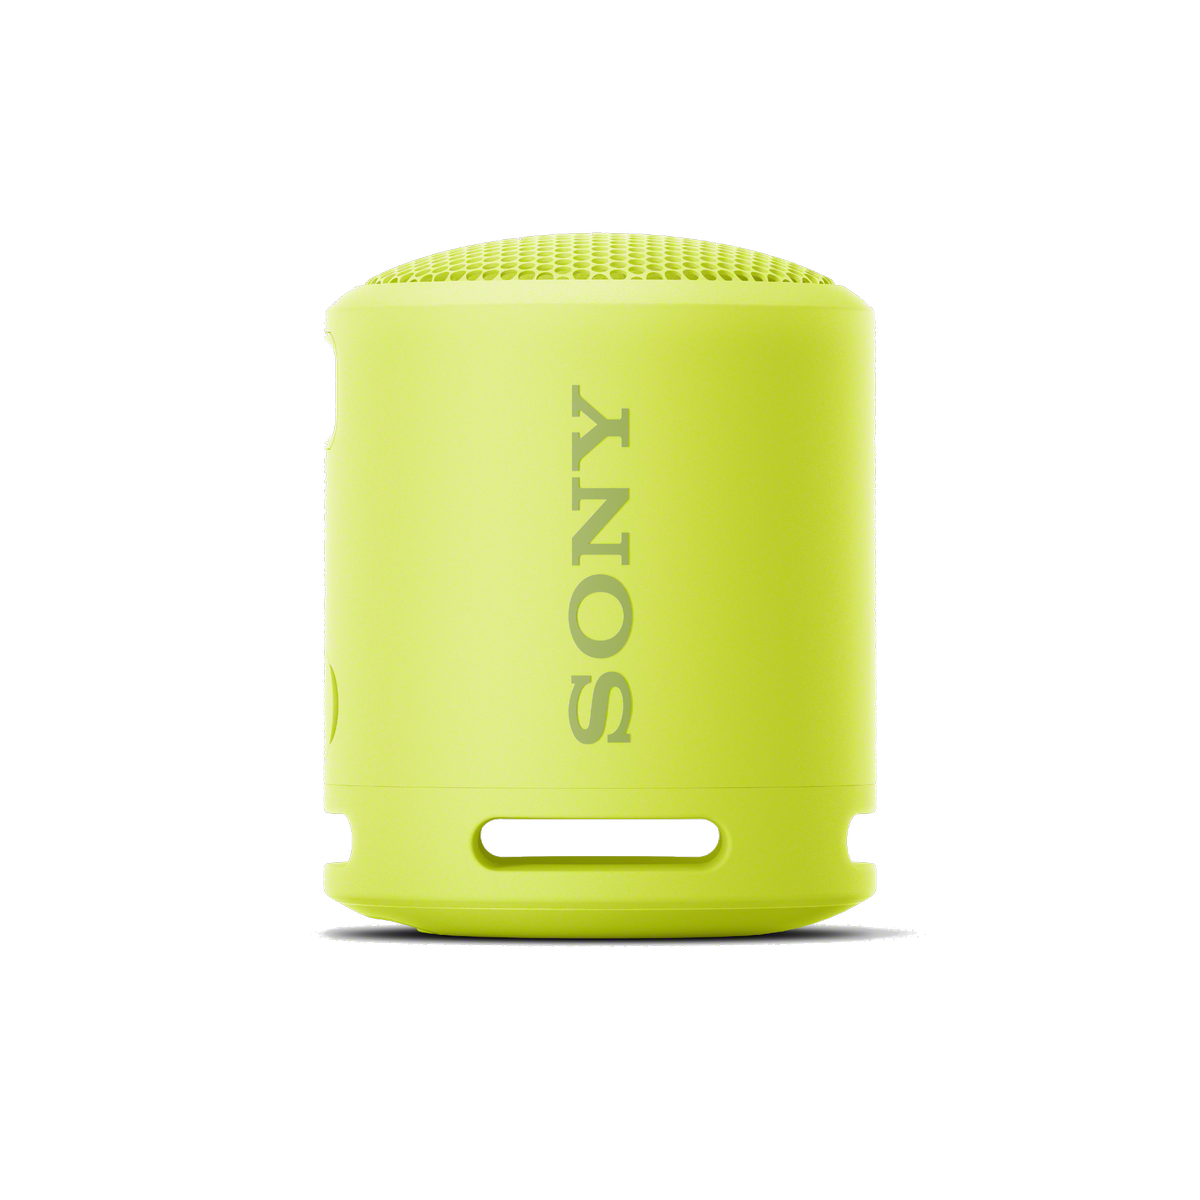 Altavoz Sony Srsxb13 y amarillo 5w batería 16h bluetooth compacto duradero potente con extra bass resistente agua autonomía hasta 16 horas srsxb13y.ce7 de ip67 srsxb13y xb13y